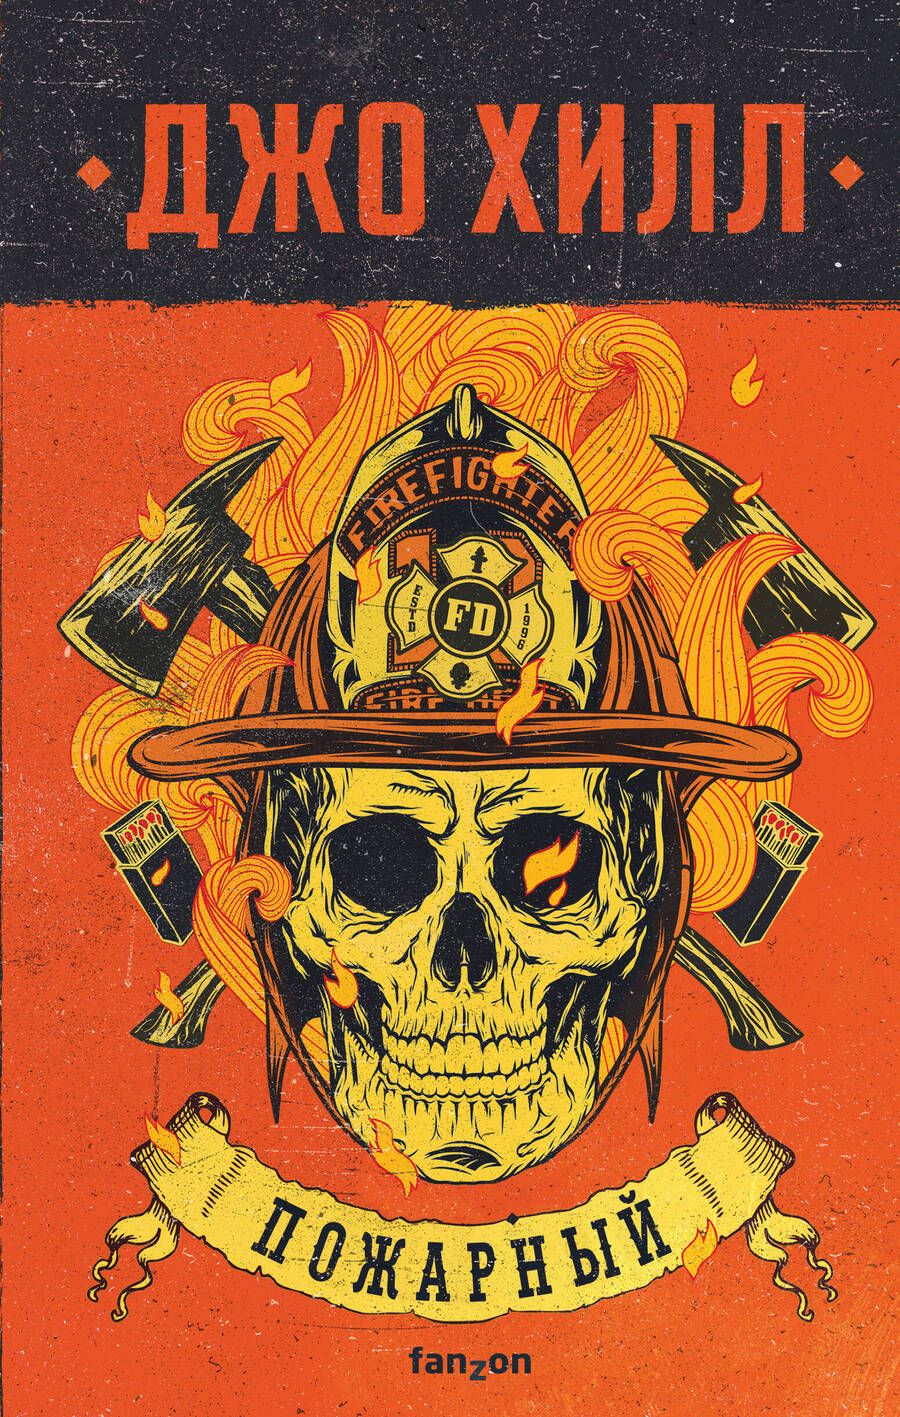 Обложка книги "Хилл: Пожарный"